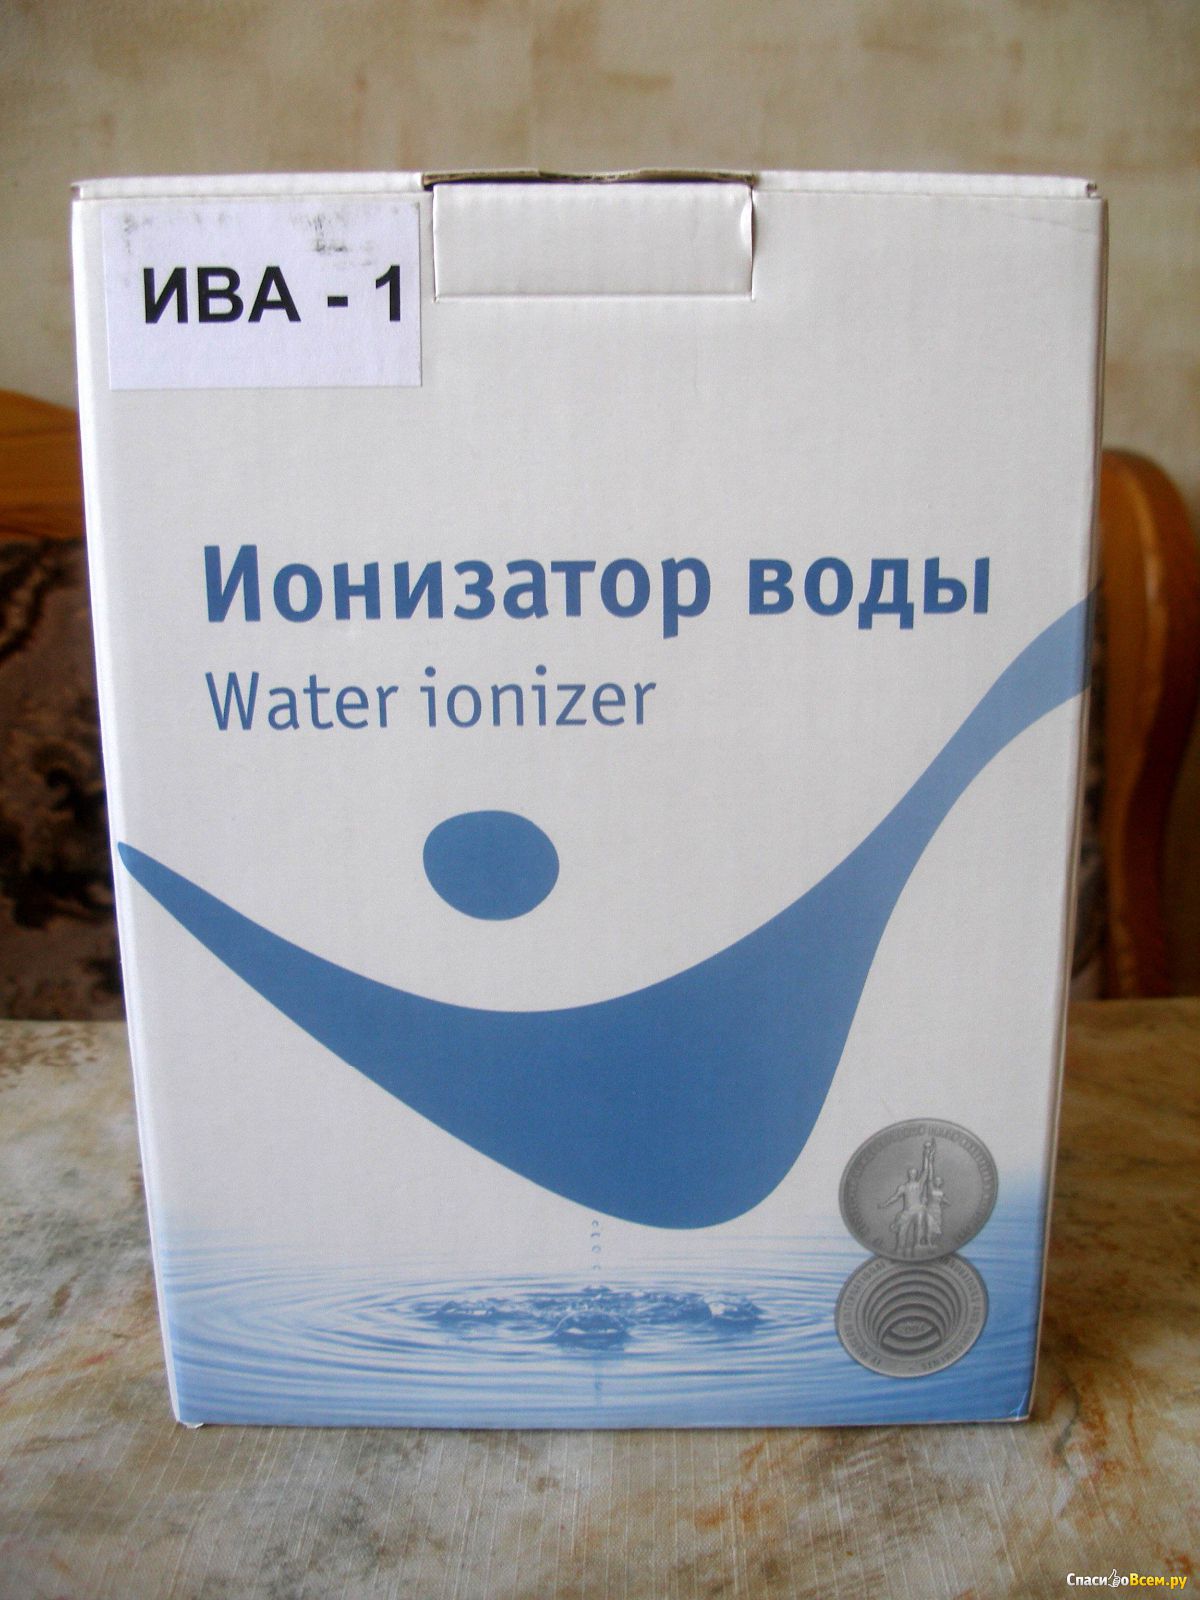 Активатор воды PTV-A. Ива-1 активатор электролизер. Ионизатор воды Ива 1 отзывы. Активатор воды PTV-A С таймером купить.